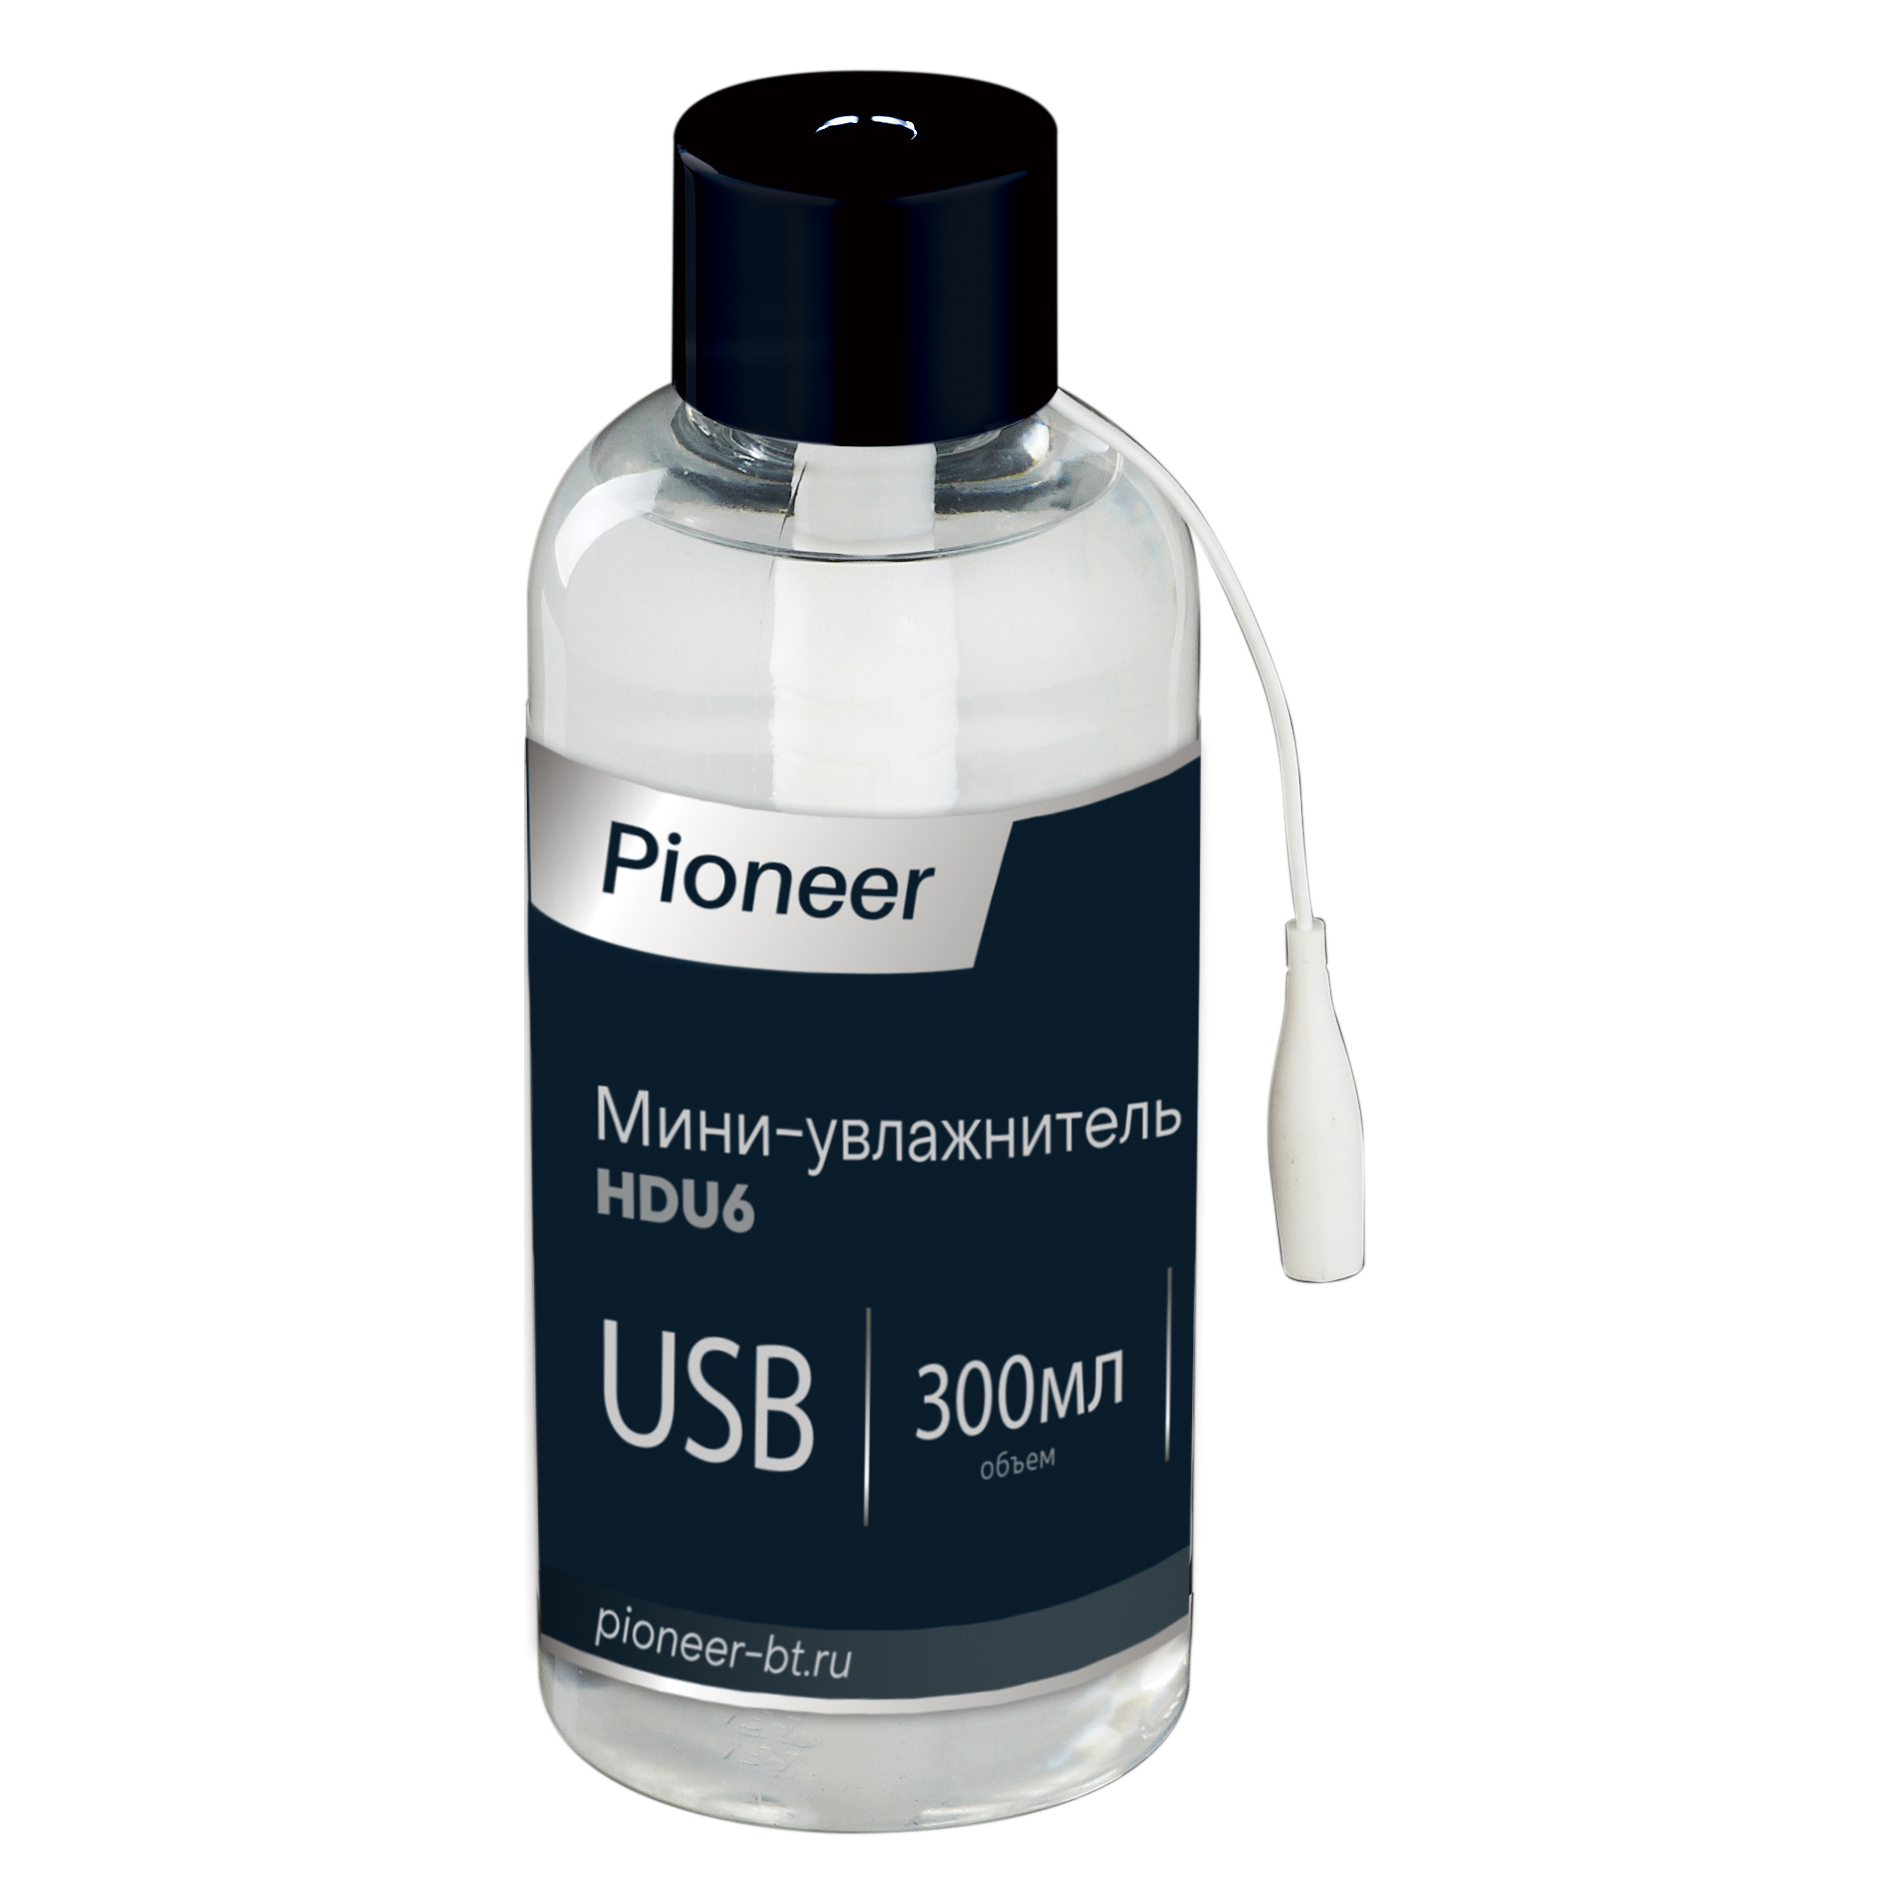 Мини-увлажнитель воздуха Pioneer HDU6